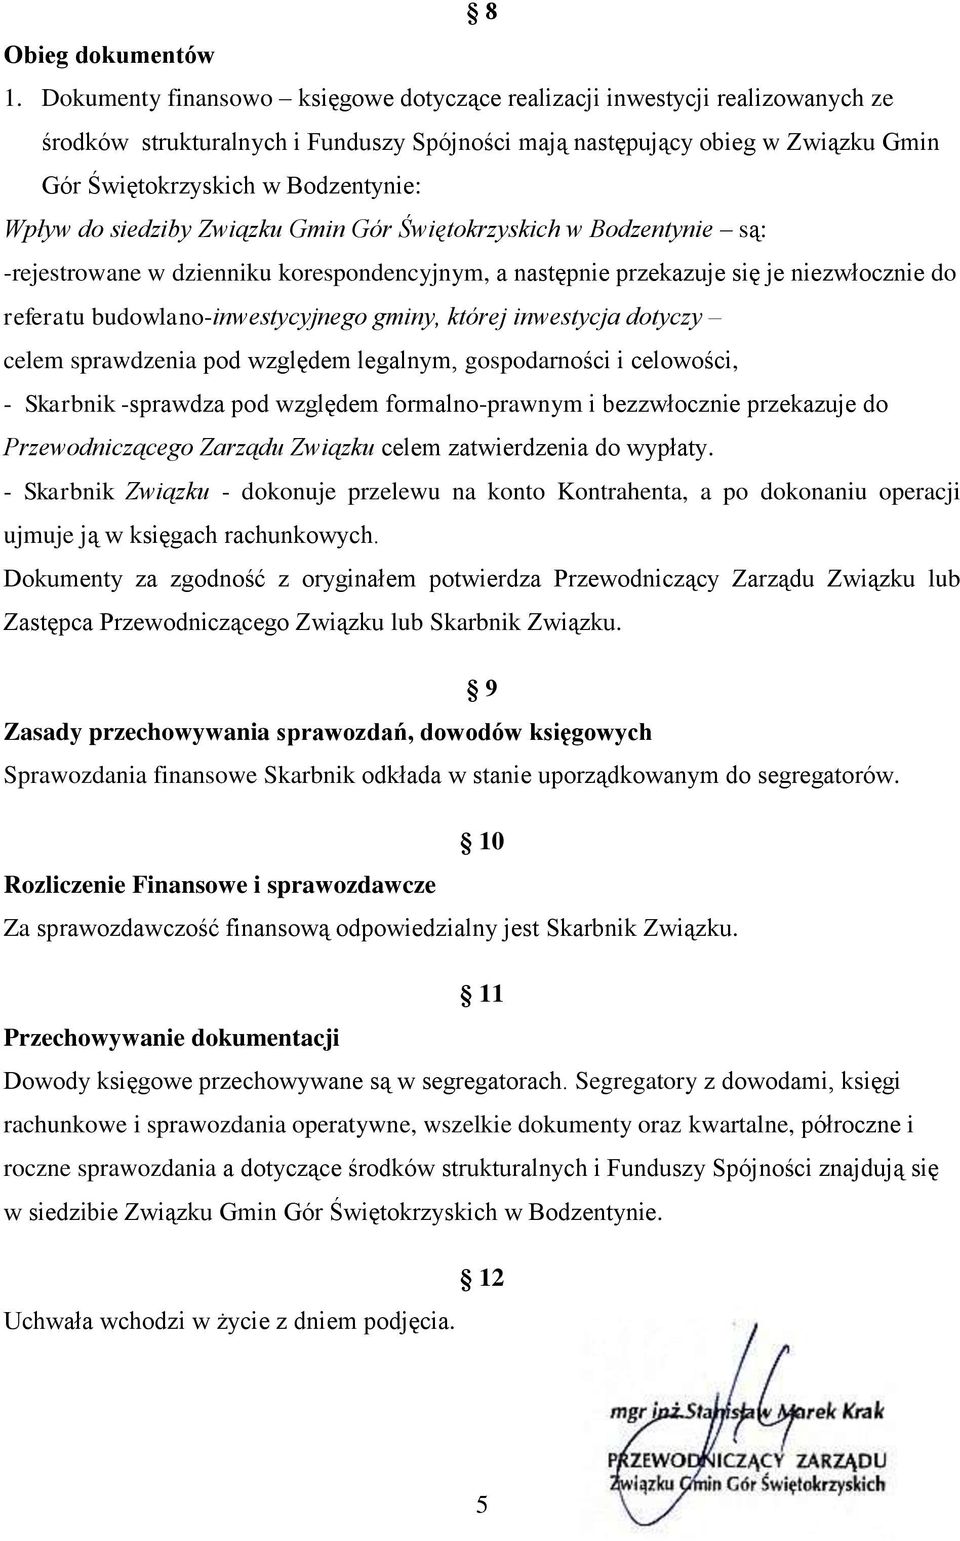 Wpływ do siedziby Związku Gmin Gór Świętokrzyskich w Bodzentynie są: -rejestrowane w dzienniku korespondencyjnym, a następnie przekazuje się je niezwłocznie do referatu budowlano-inwestycyjnego